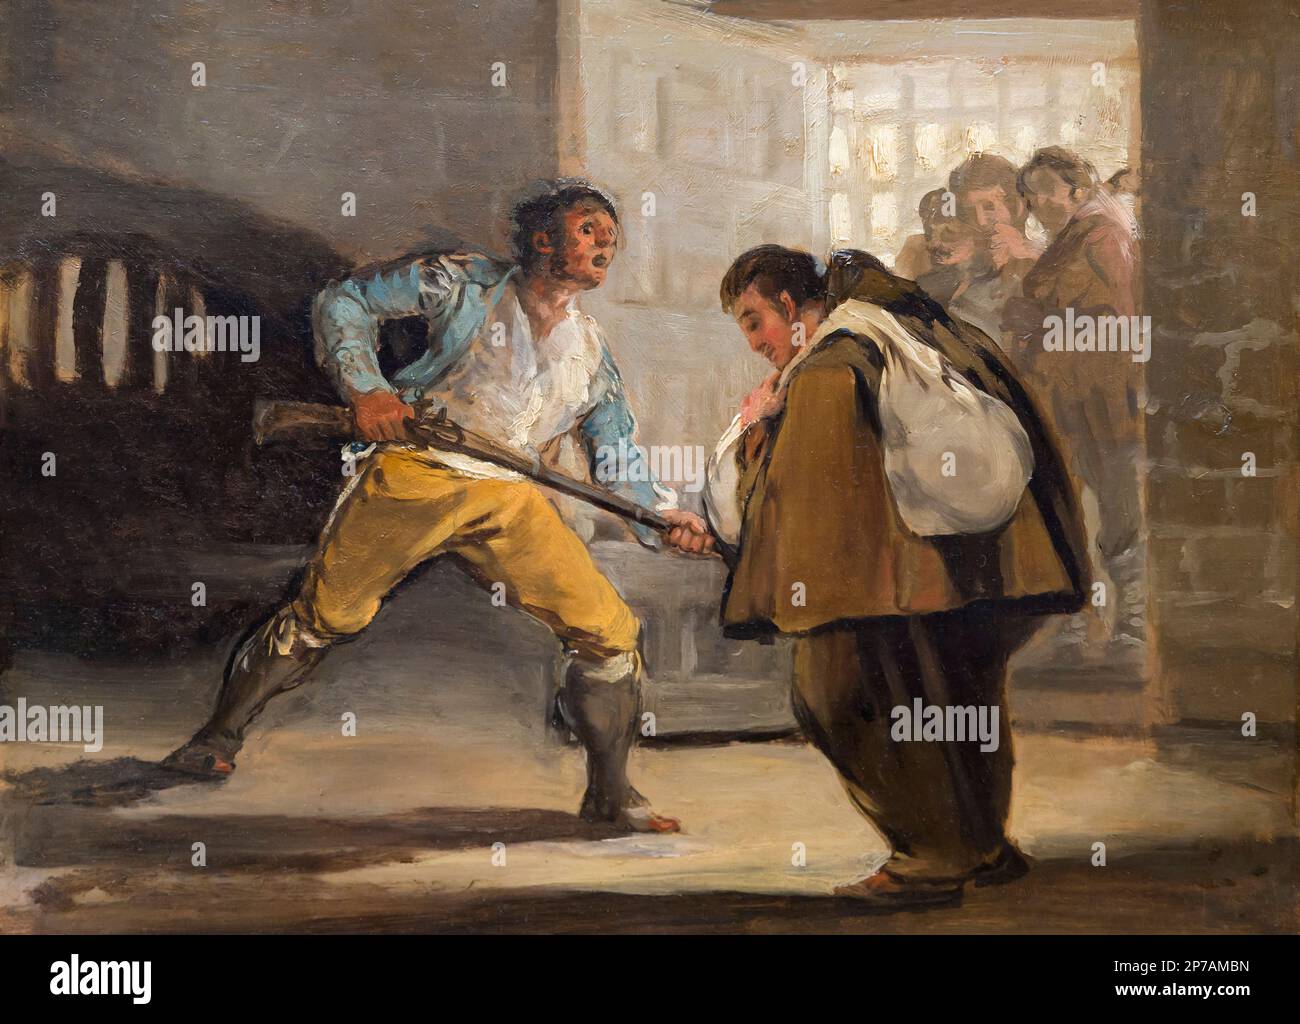 El Maragato menace Friar Pedro de Zaldivia avec son fusil, Francisco Goya, vers 1806, Art Institute of Chicago, Chicago, Illinois, USA, Amérique du Nord Banque D'Images